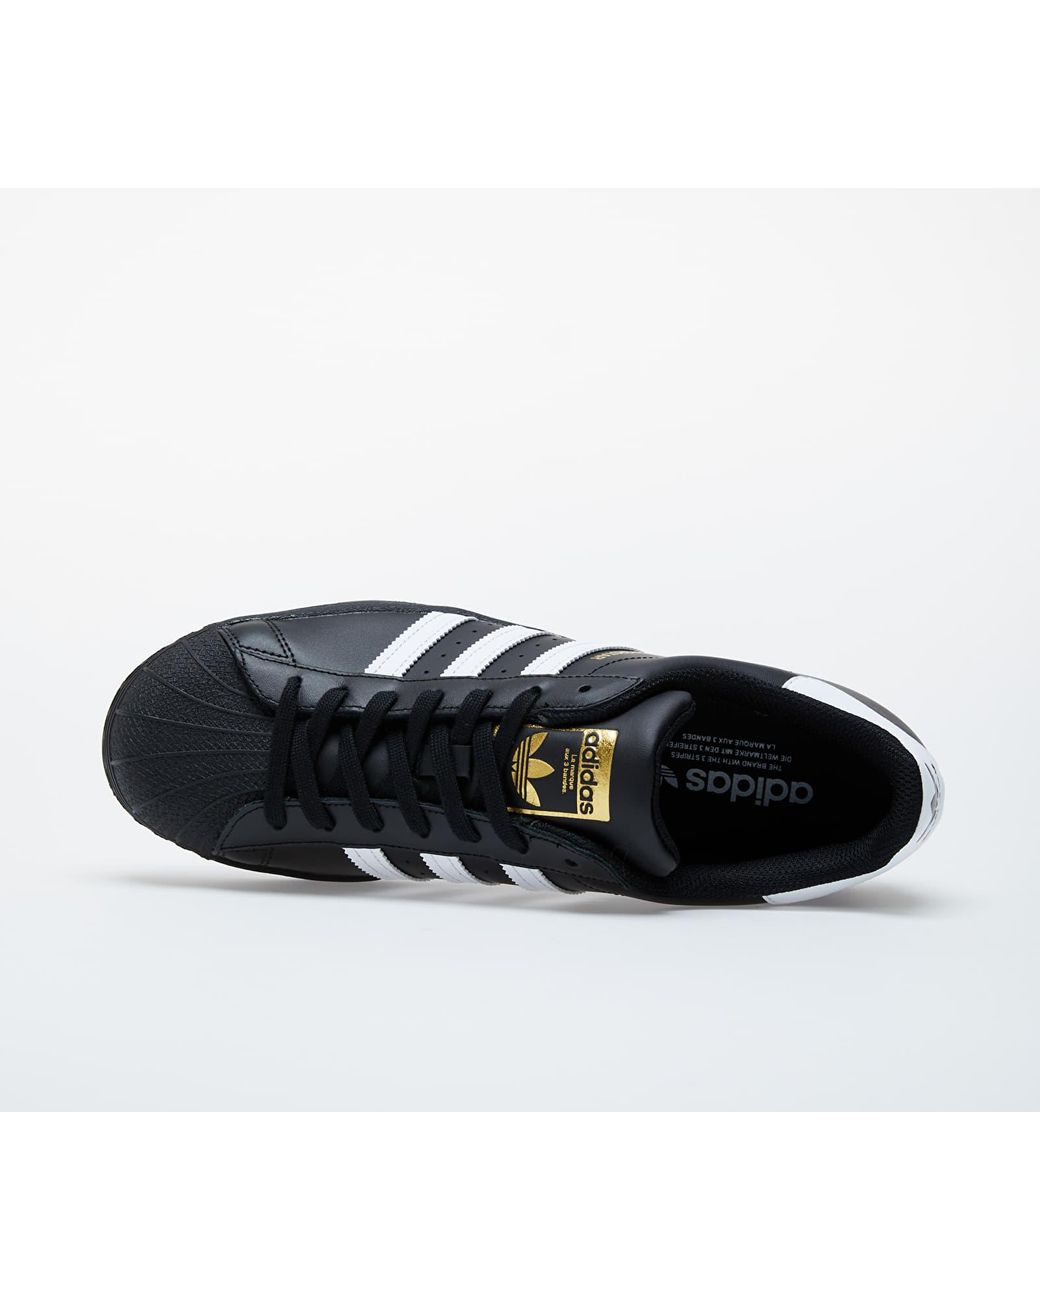 نقش حرف Adidas Superstar Core Black/ Ftw White/ Core Black adidas ... نقش حرف